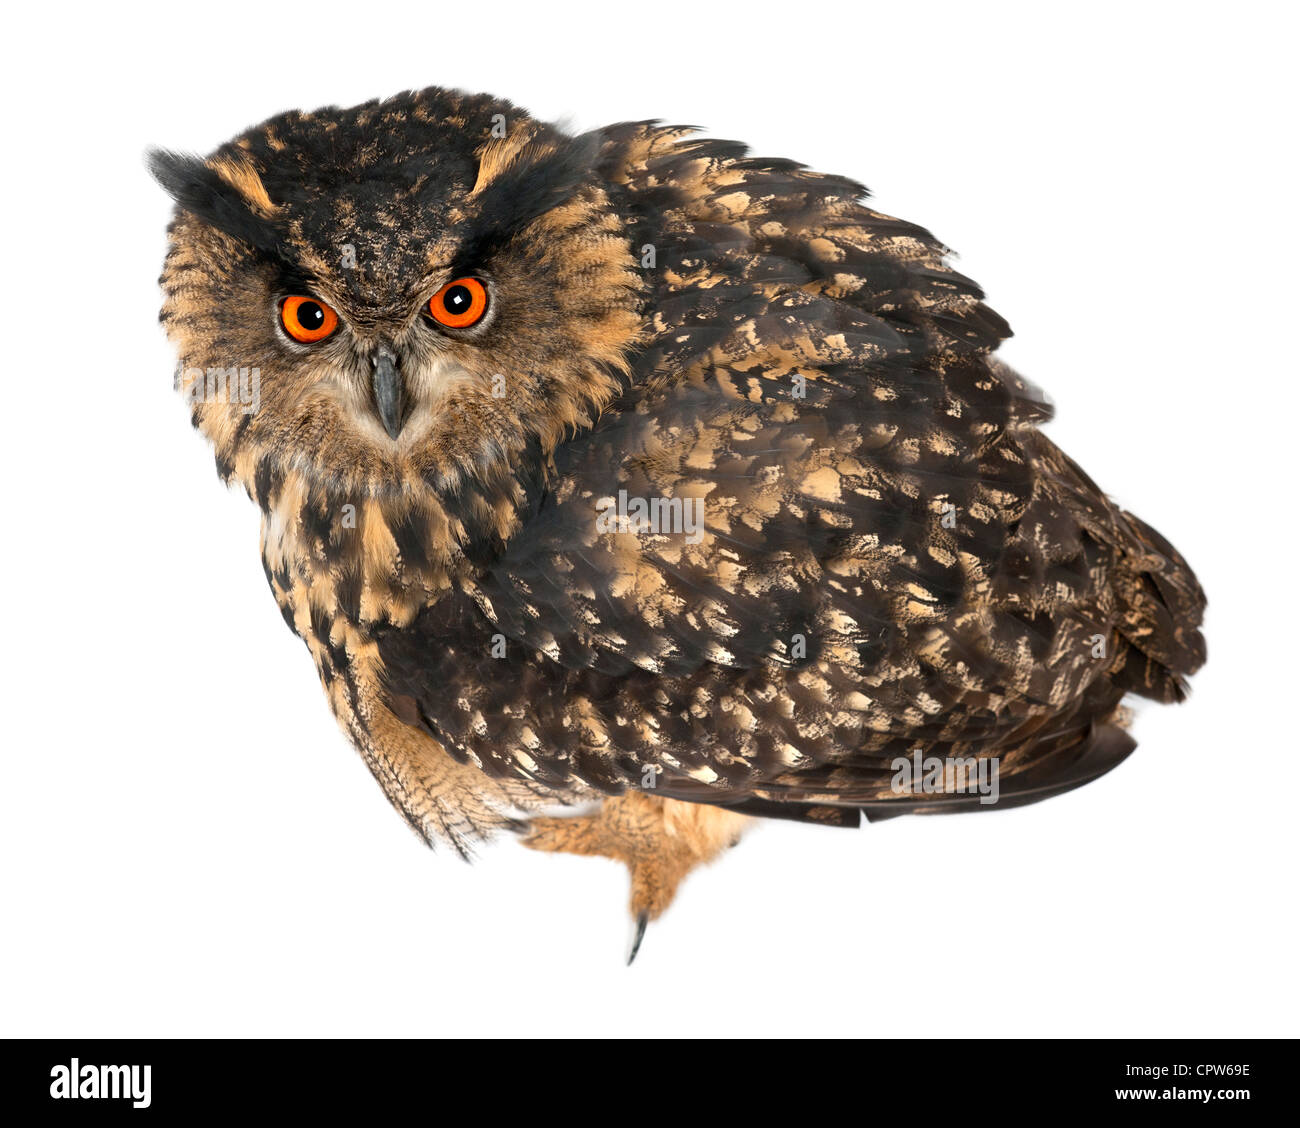 Eurasian Eagle-Owl, Bubo bubo, 15 anni, ritratto contro uno sfondo bianco Foto Stock